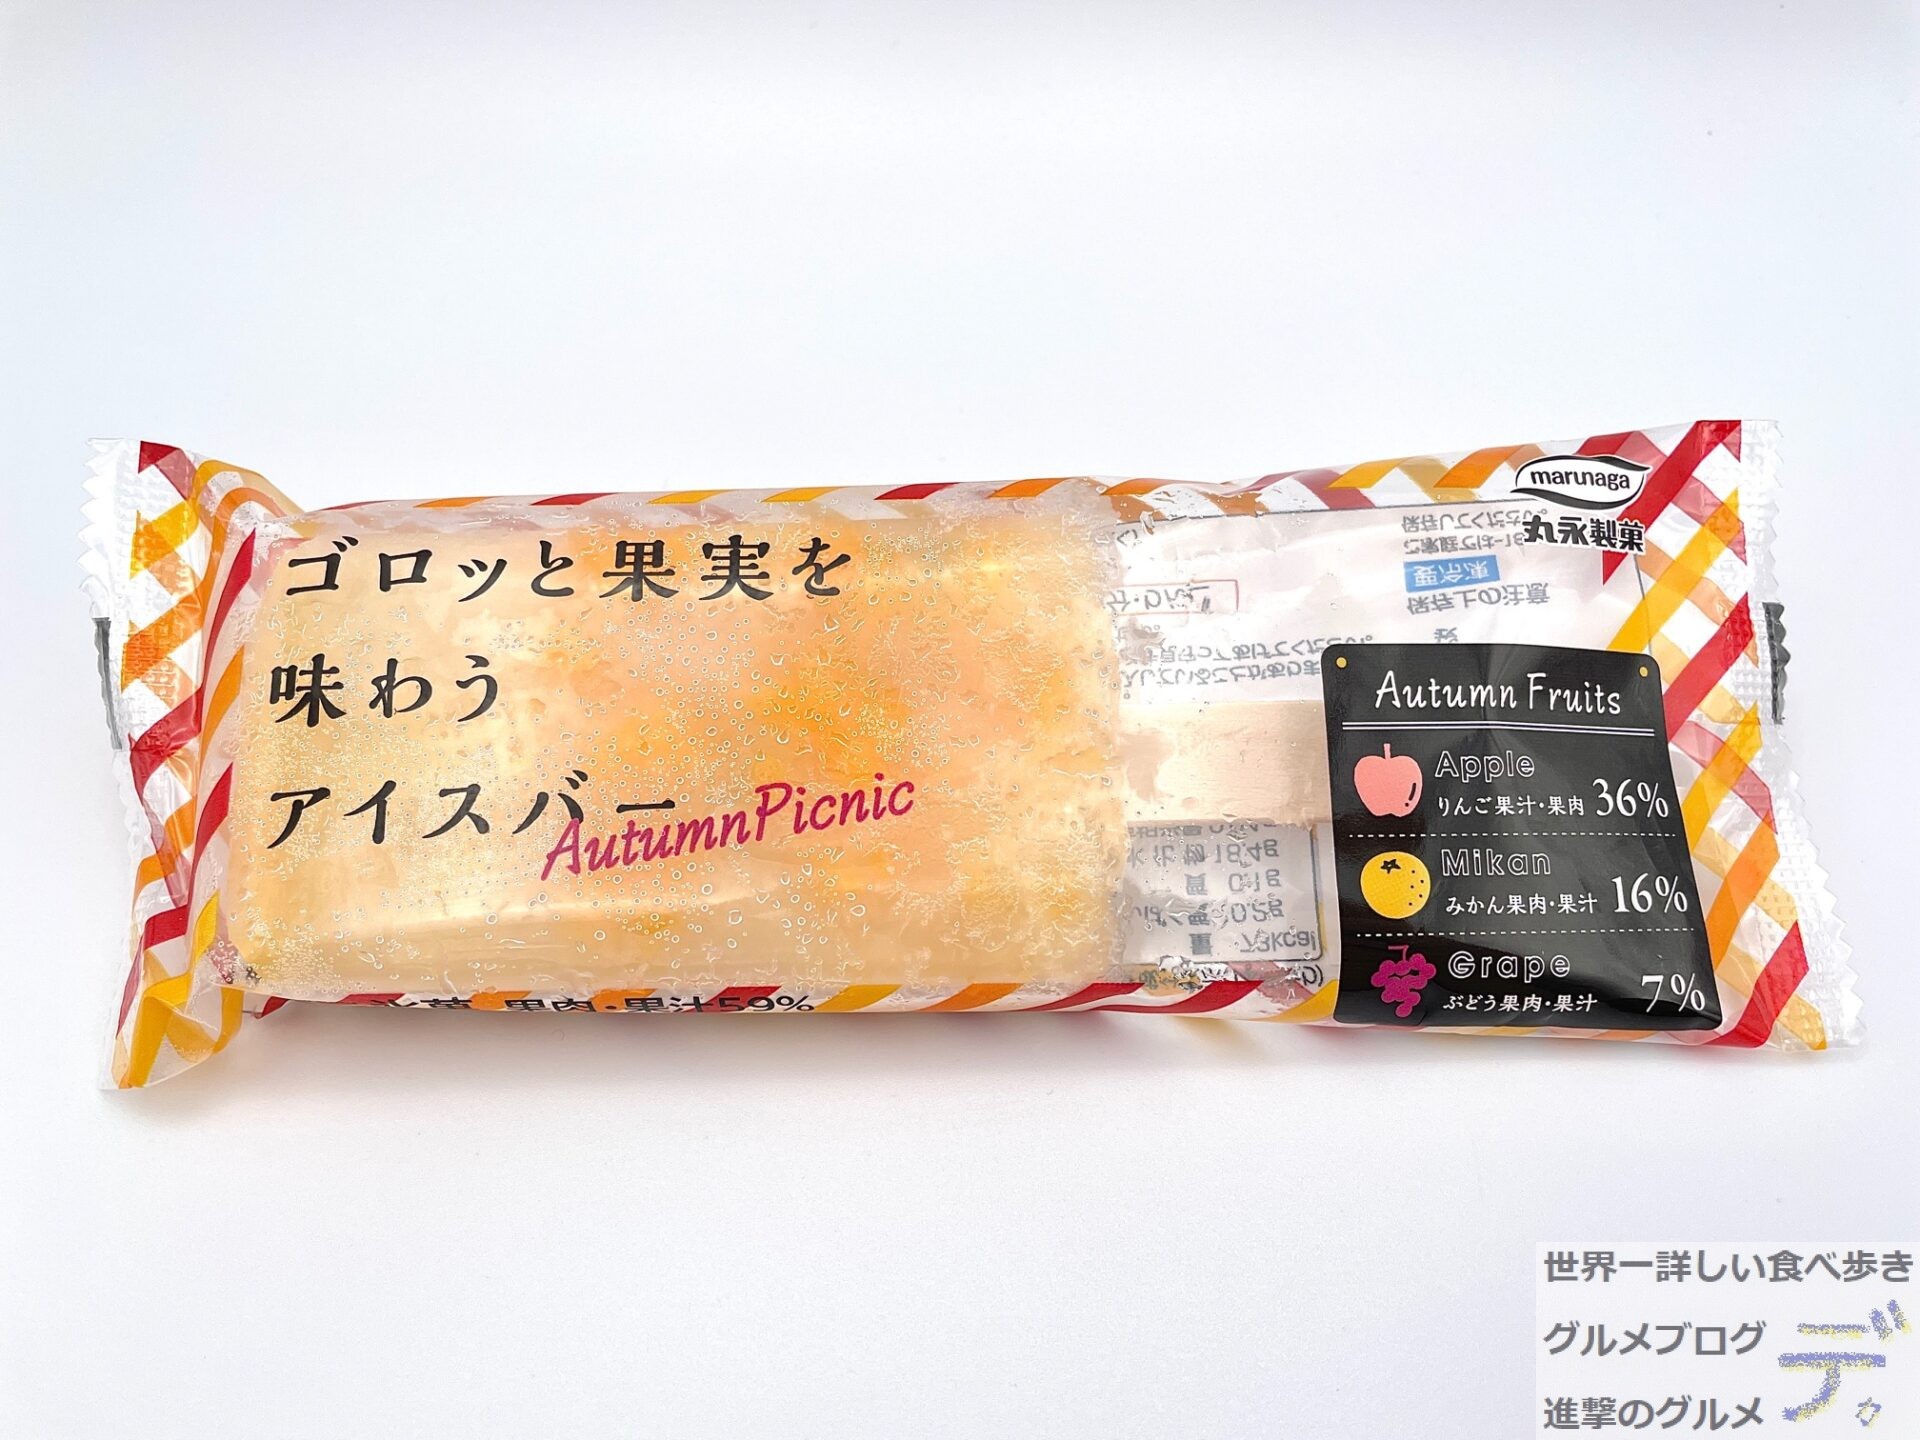 果肉 果汁59 セブンイレブン新作 果実アイス を食べてみた 進撃のグルメ Yahoo Japan クリエイターズプログラム